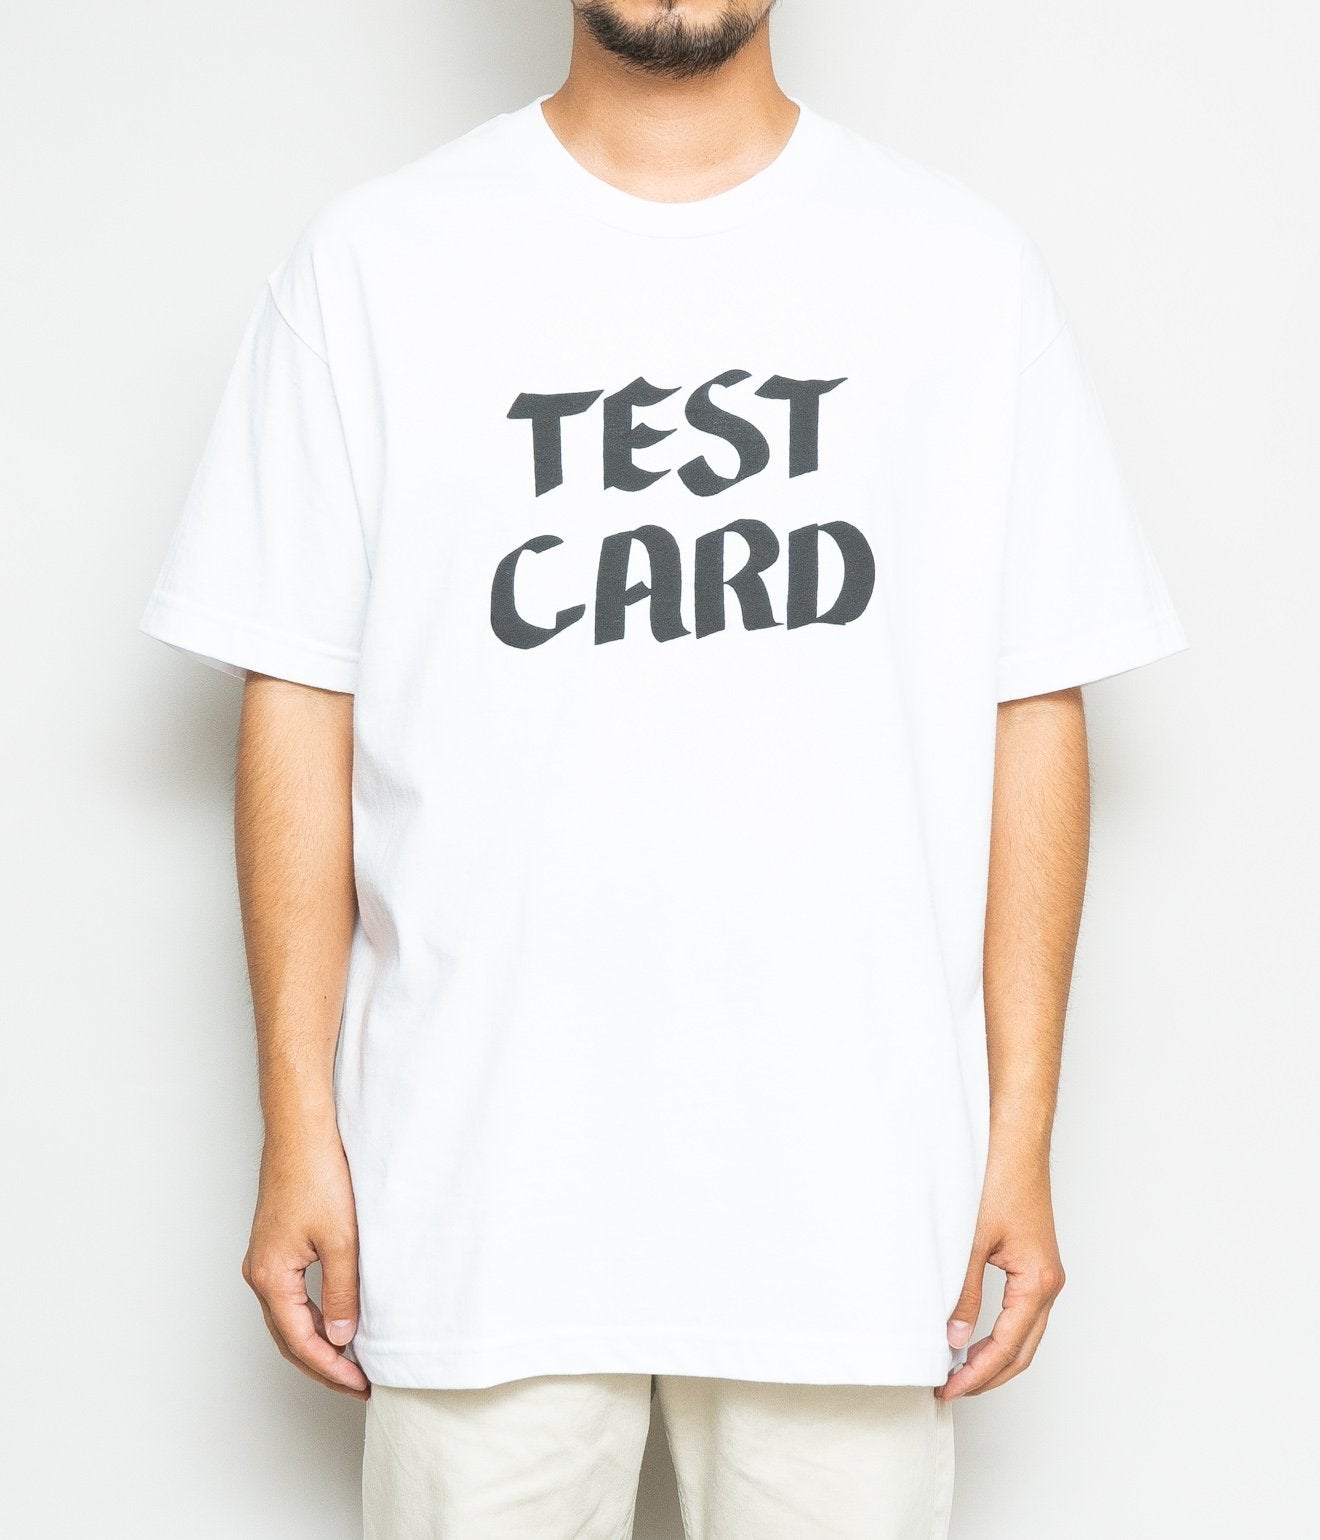 LOOSEJOINTS Tomoo Gokita / Test Card TEE WHITE - WEAREALLANIMALS